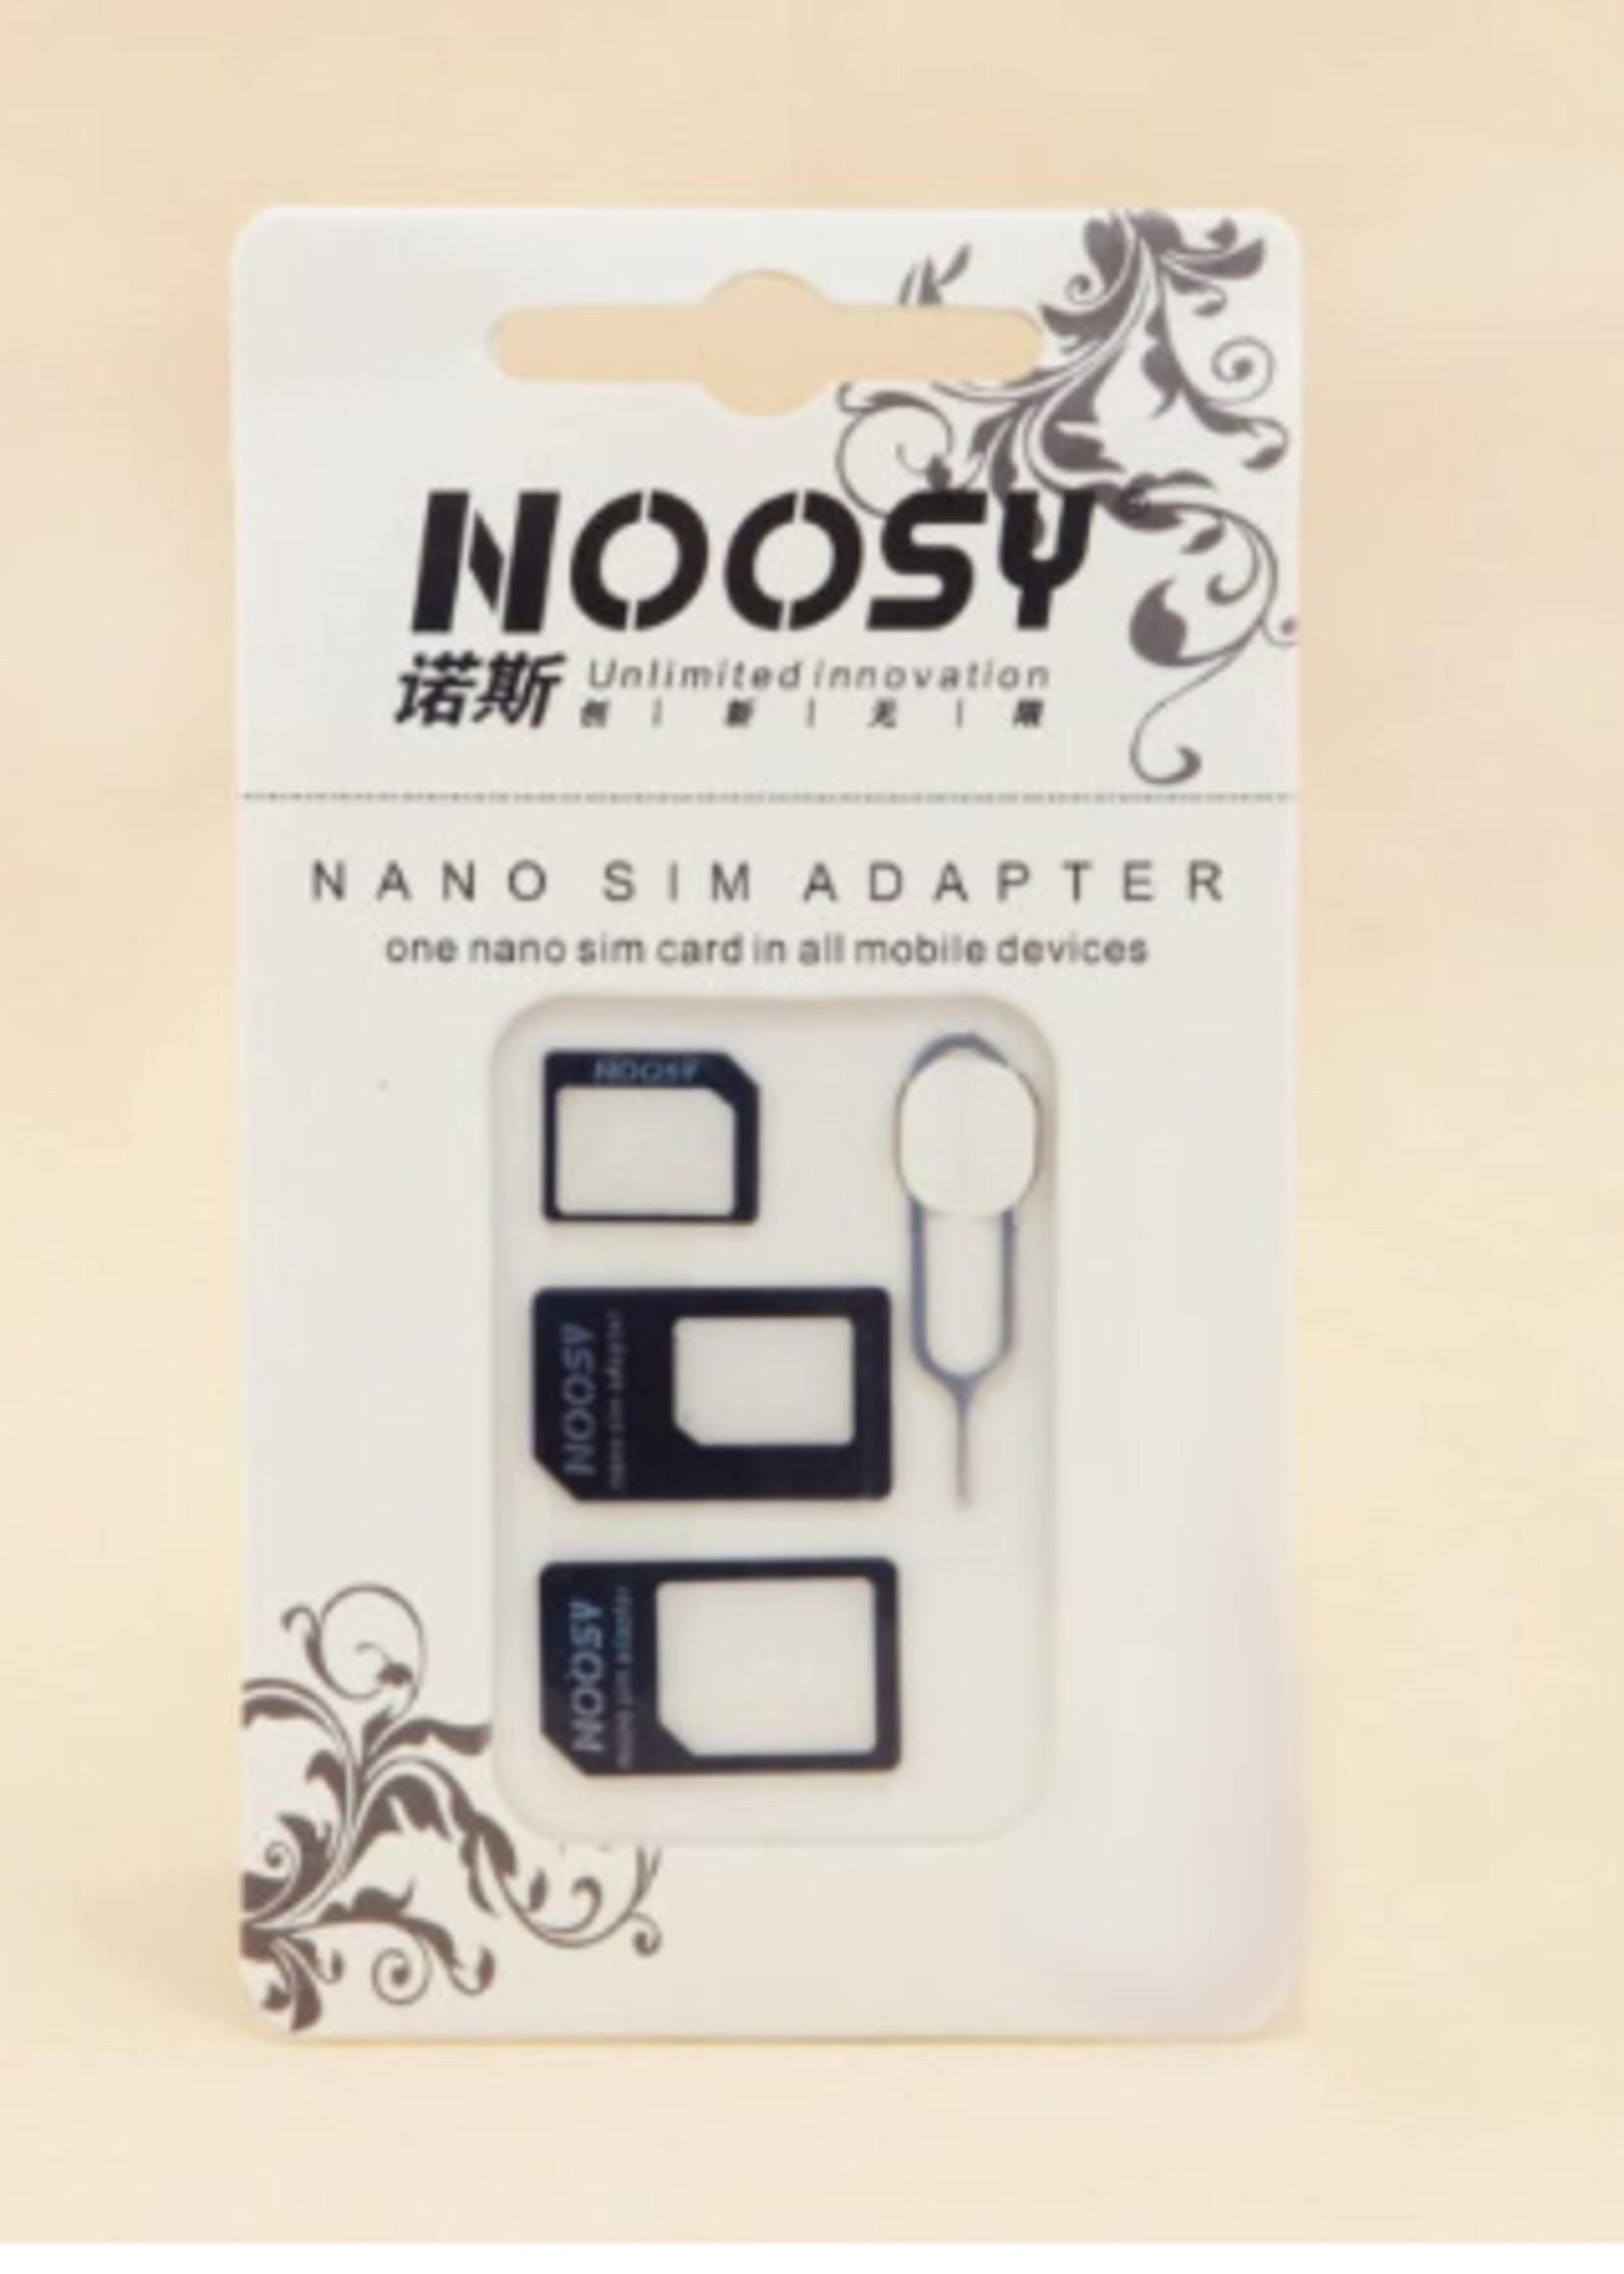 Noosy Noosy Nano SIM Adapter